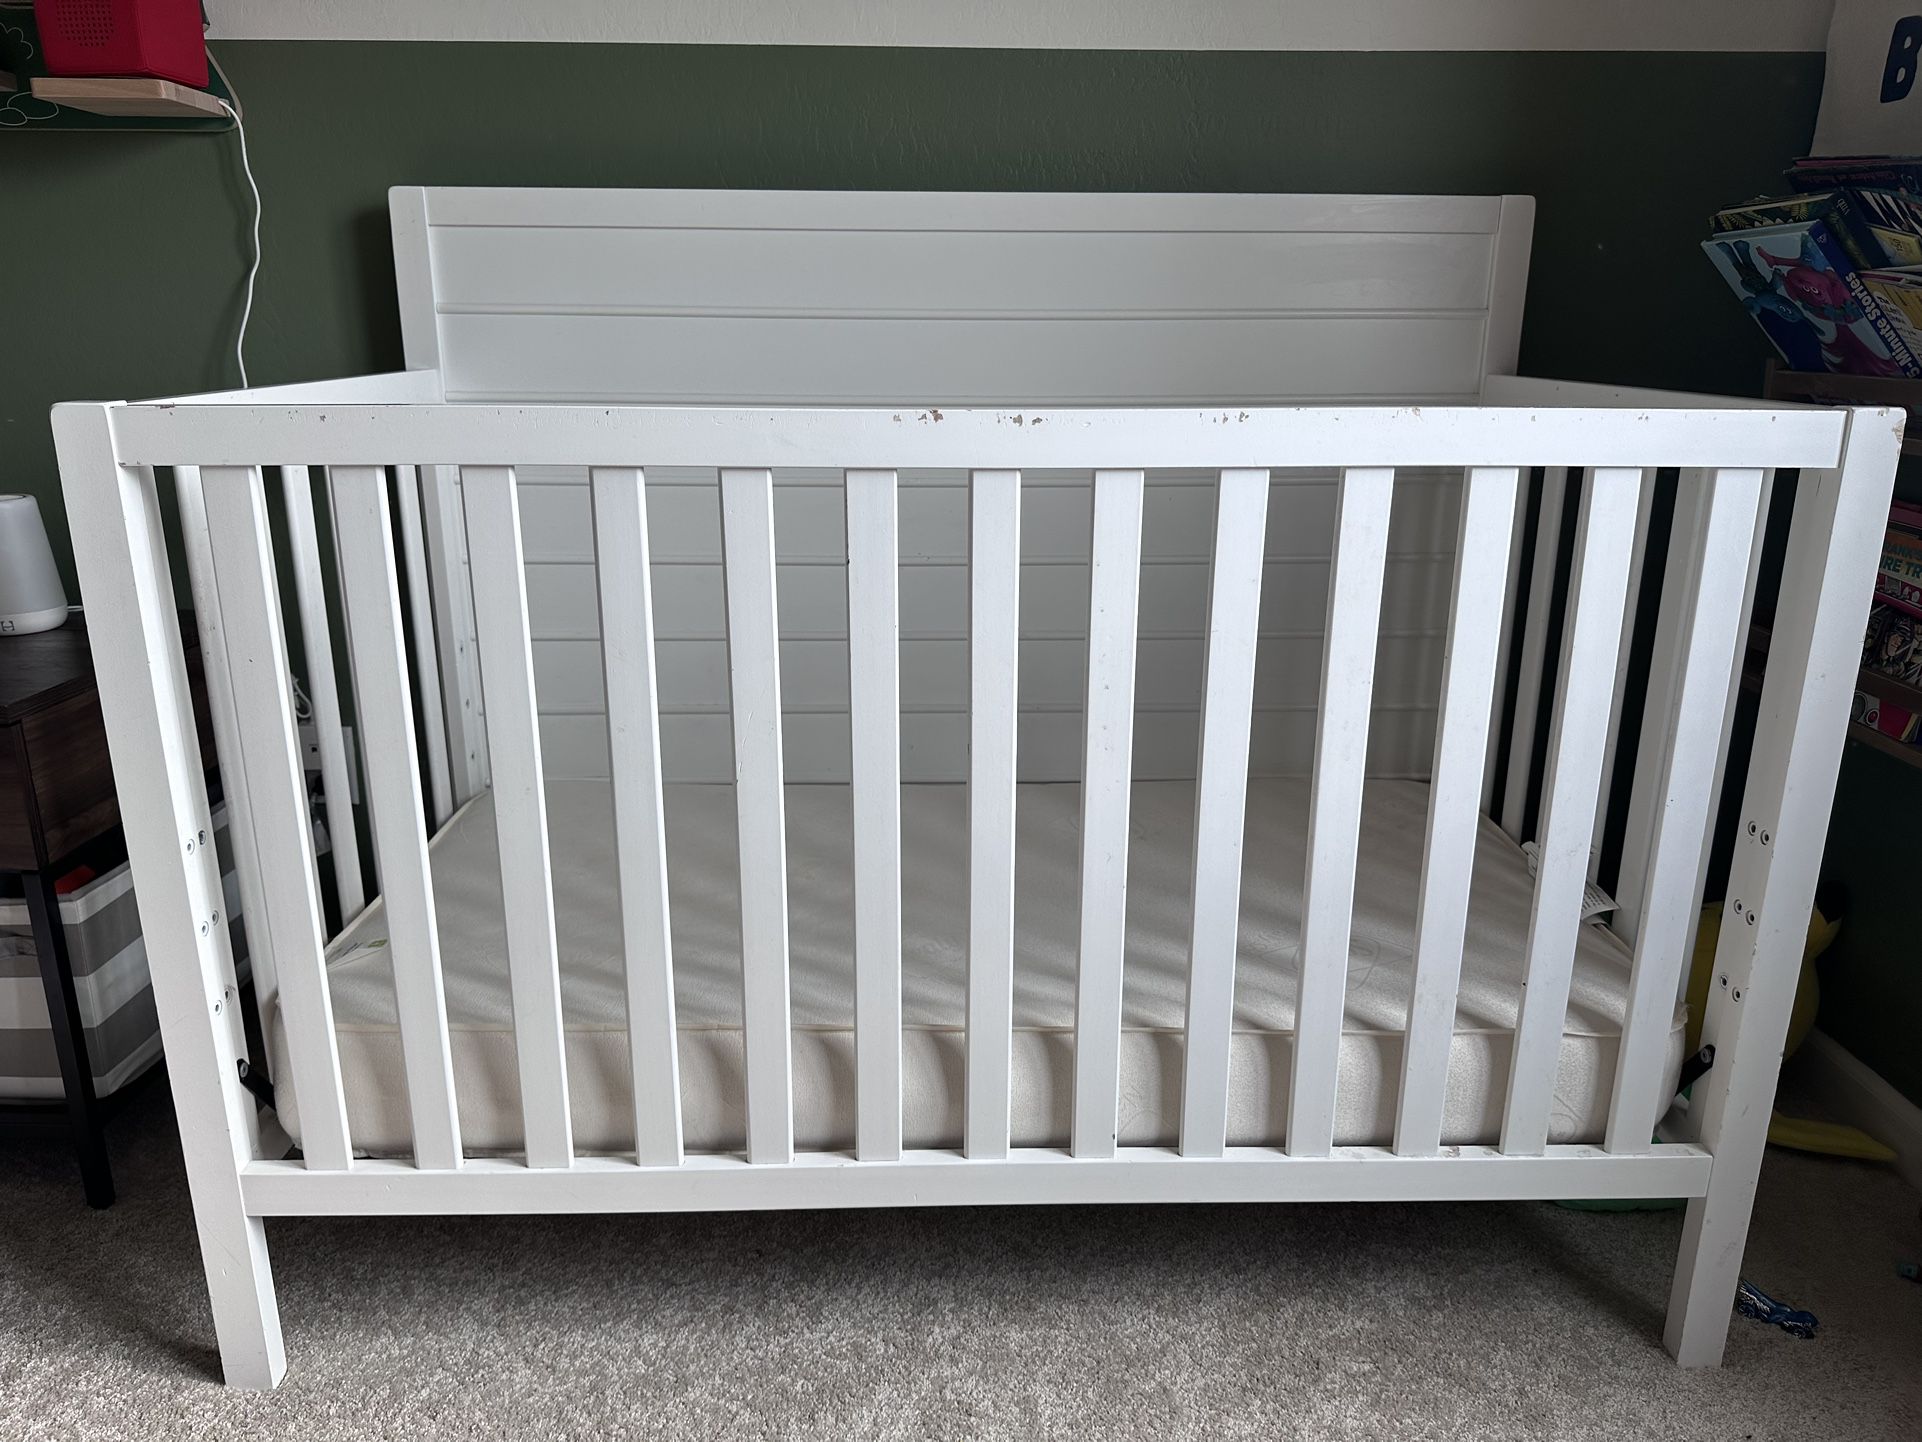 White Crib